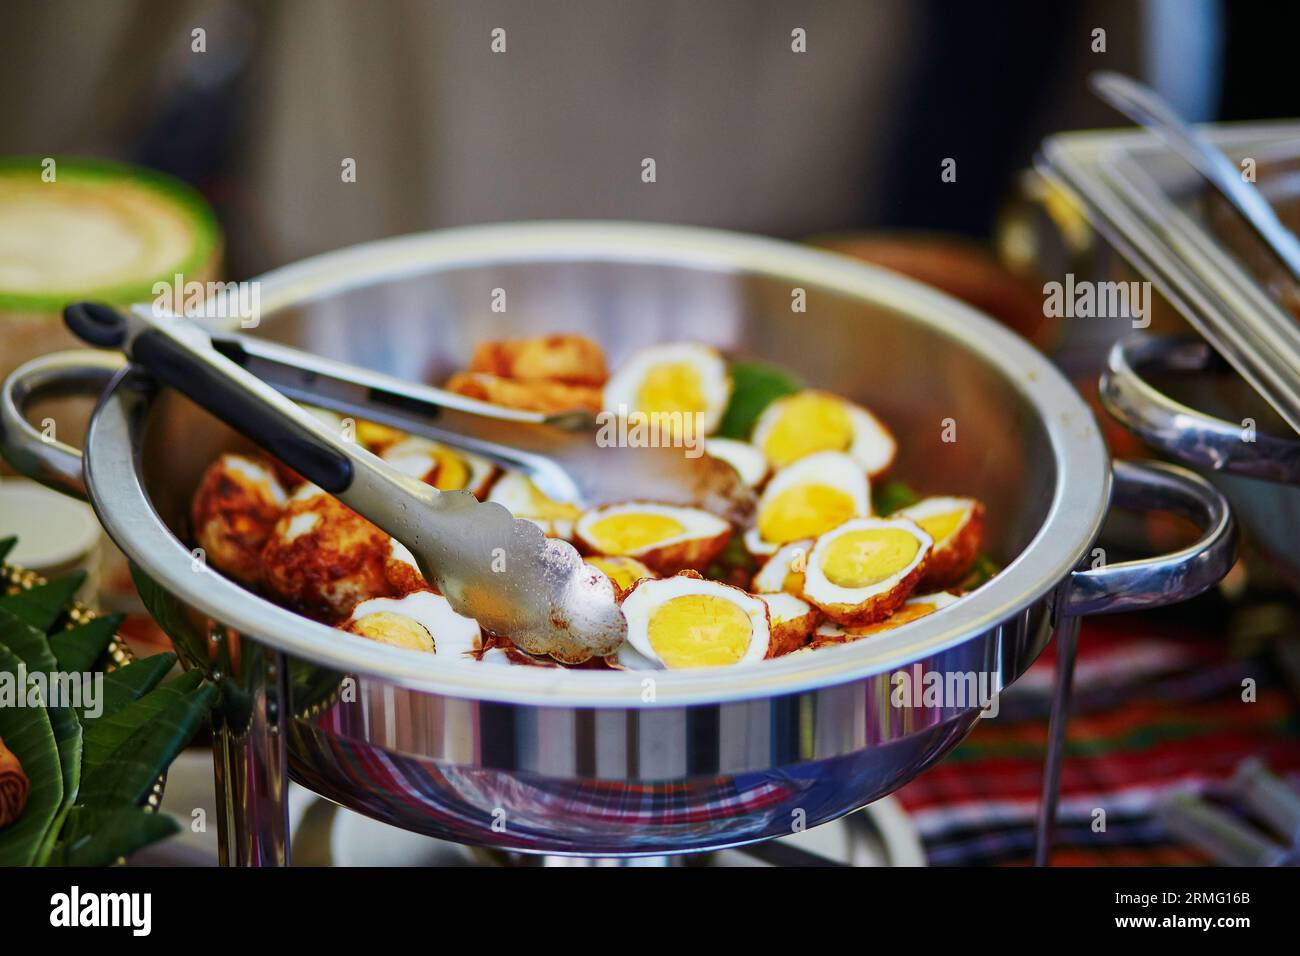 Son-in-Schwiegereier - Kai Loog Keuy - traditionelles thailändisches Essen Stockfoto